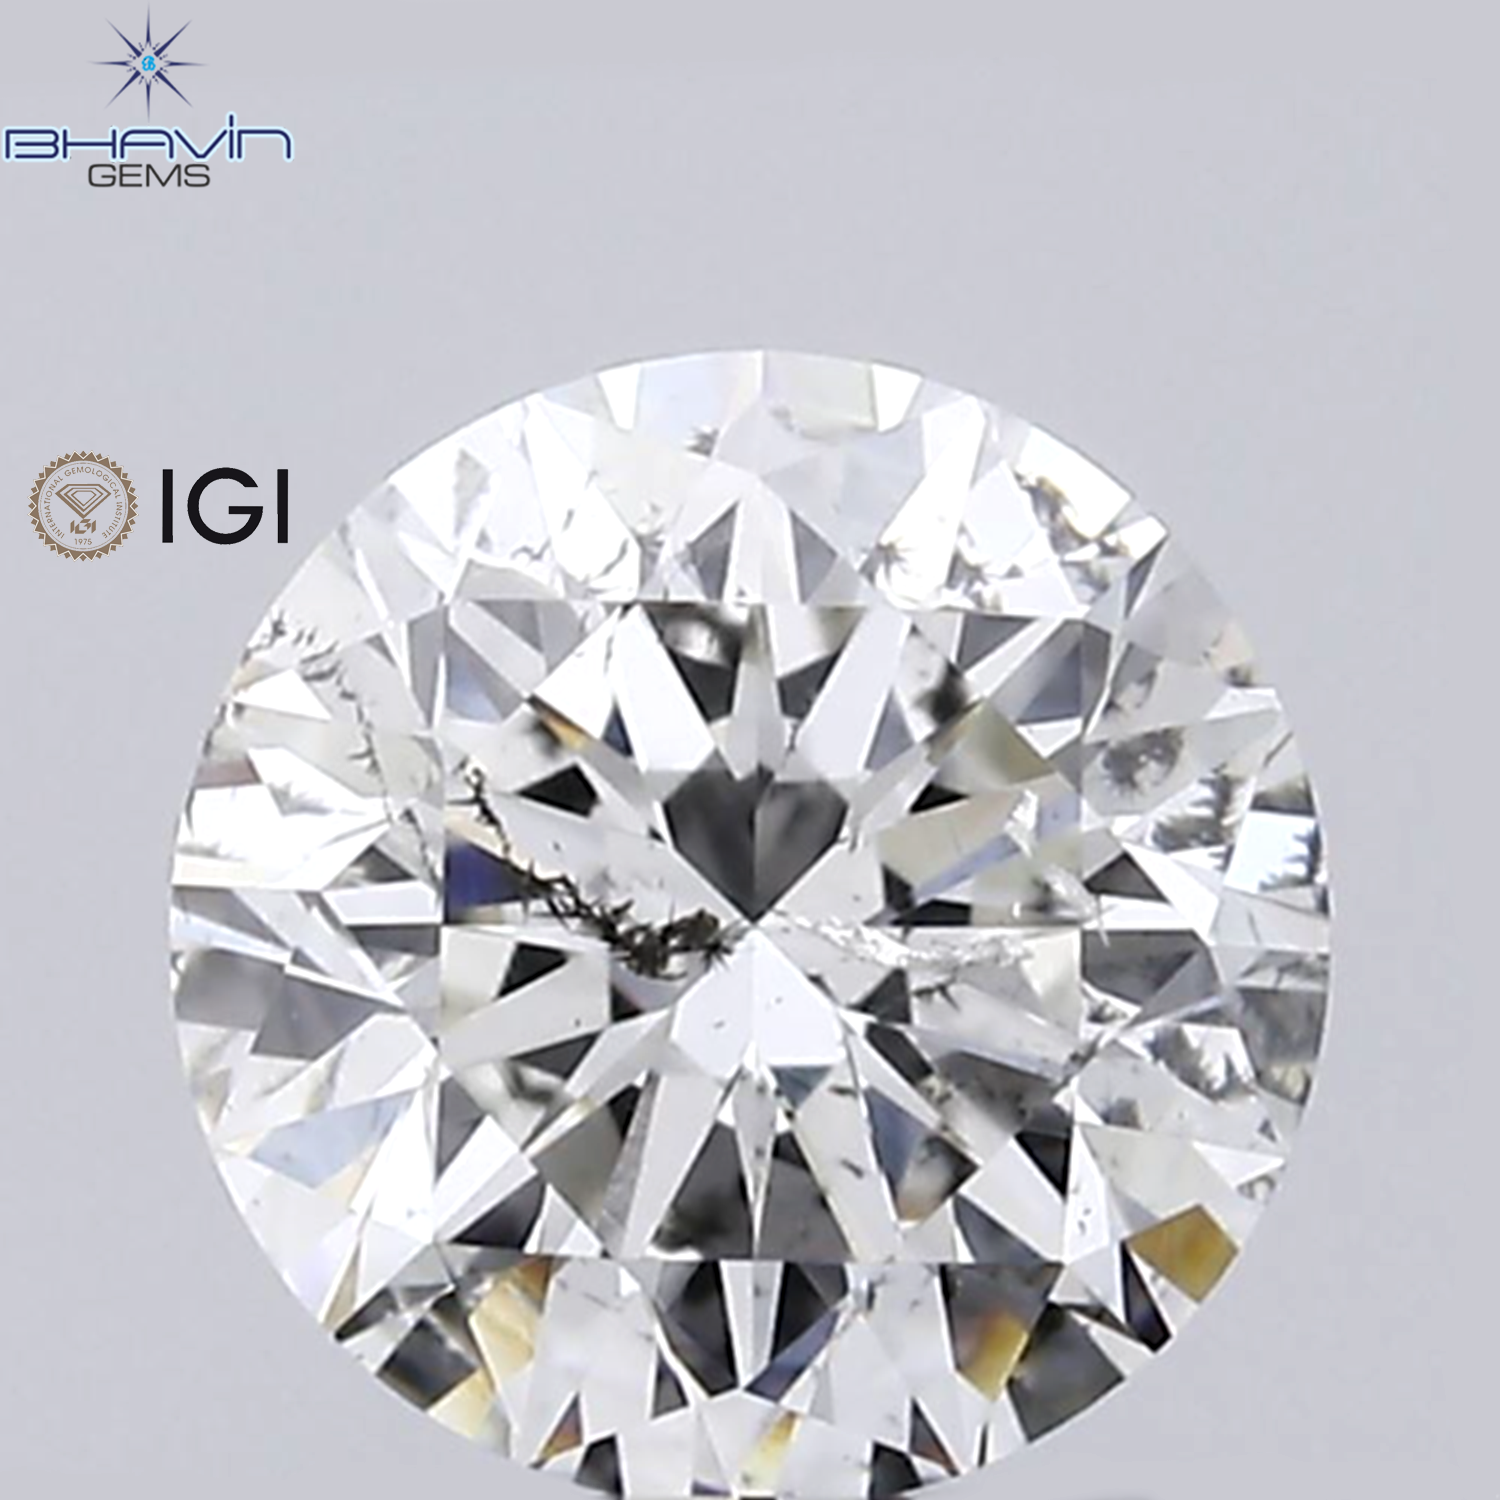 IGI Certified 0.50 CT Round Diamond White(G) Diamond Natural Loose Diamond SI2 Clarity (5.02 MM)